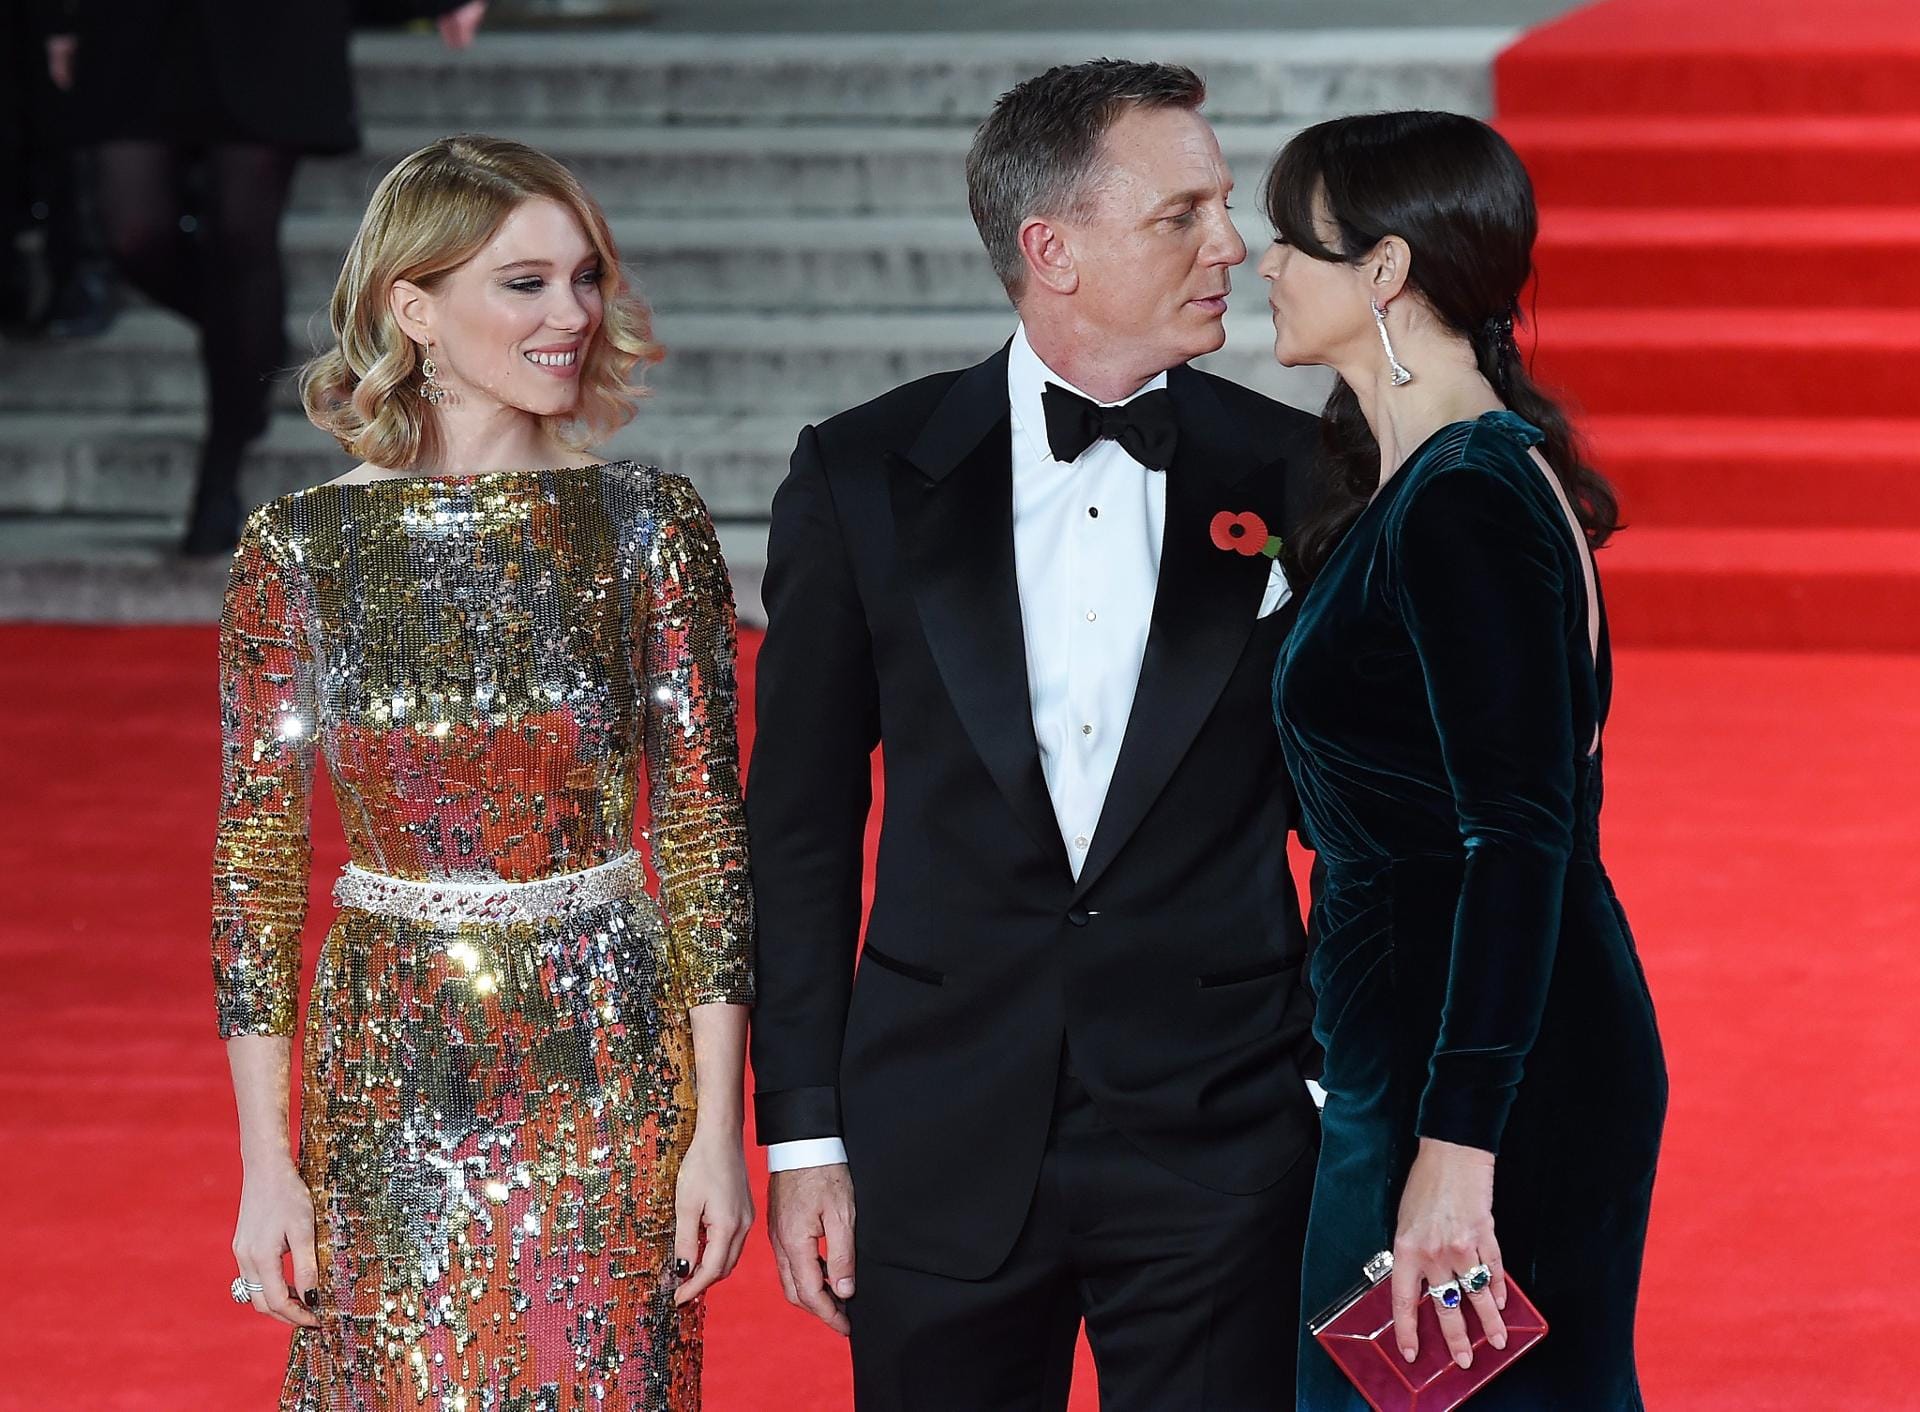 Bei der Weltpremiere von "Spectre" in London strahlten die Bond-Girls Léa Seydoux (l.) und Monica Bellucci an der Seite von Bond-Darsteller Daniel Craig um die Wette.